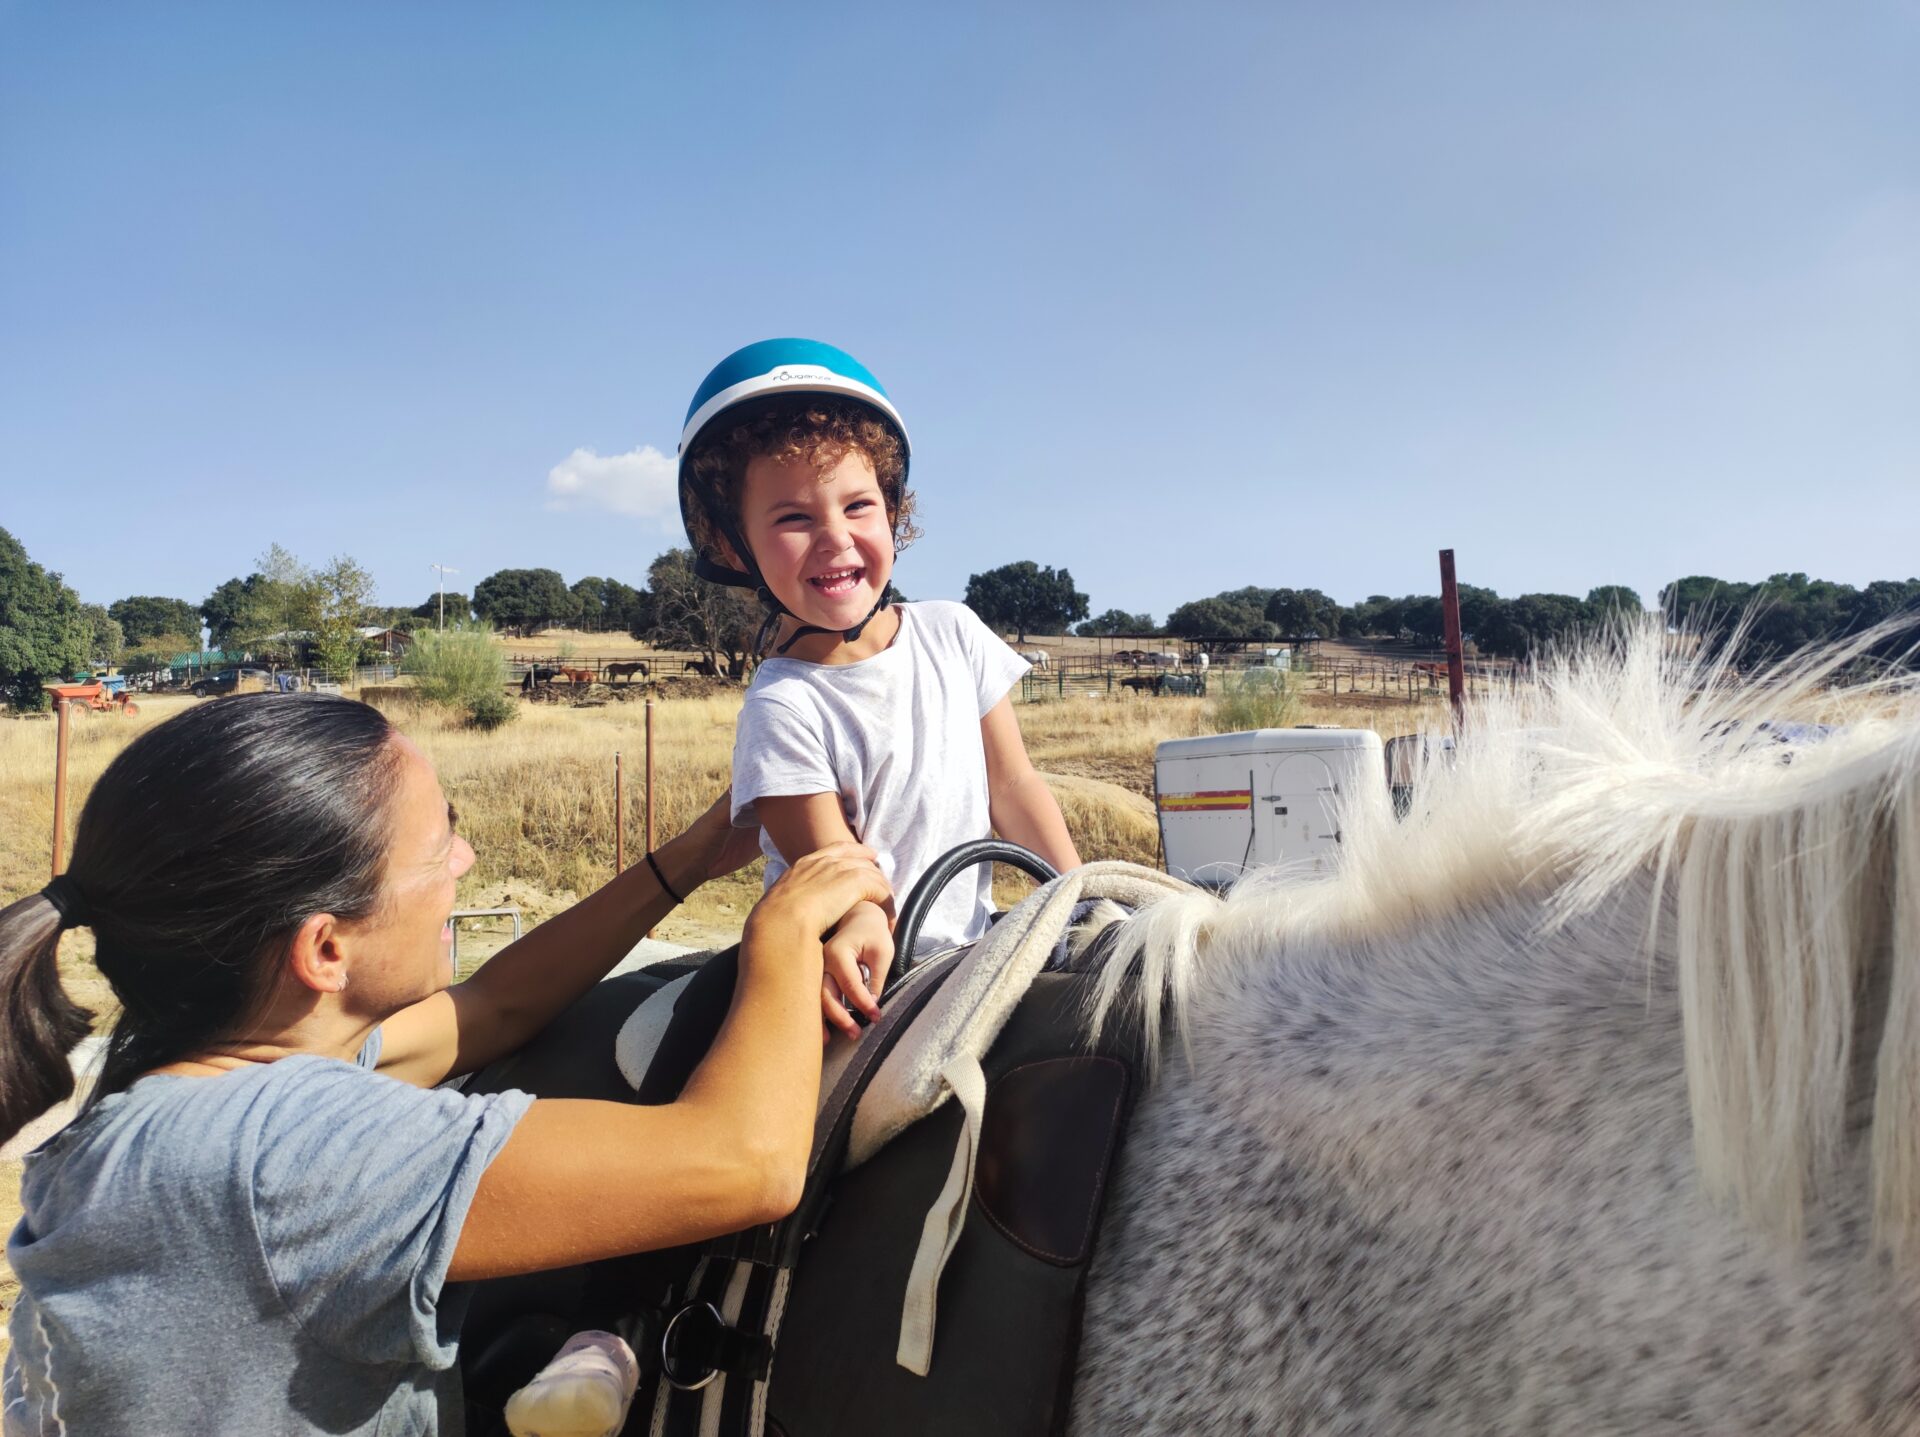 Fotografía de una niña montando a caballo durante una actividad